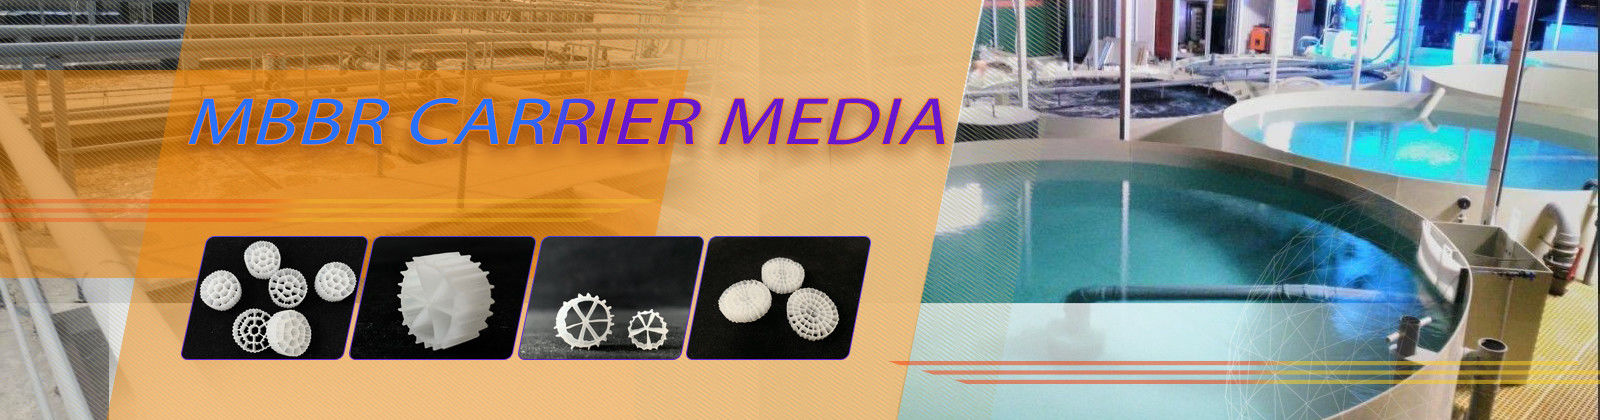 Media Filter Mbbr